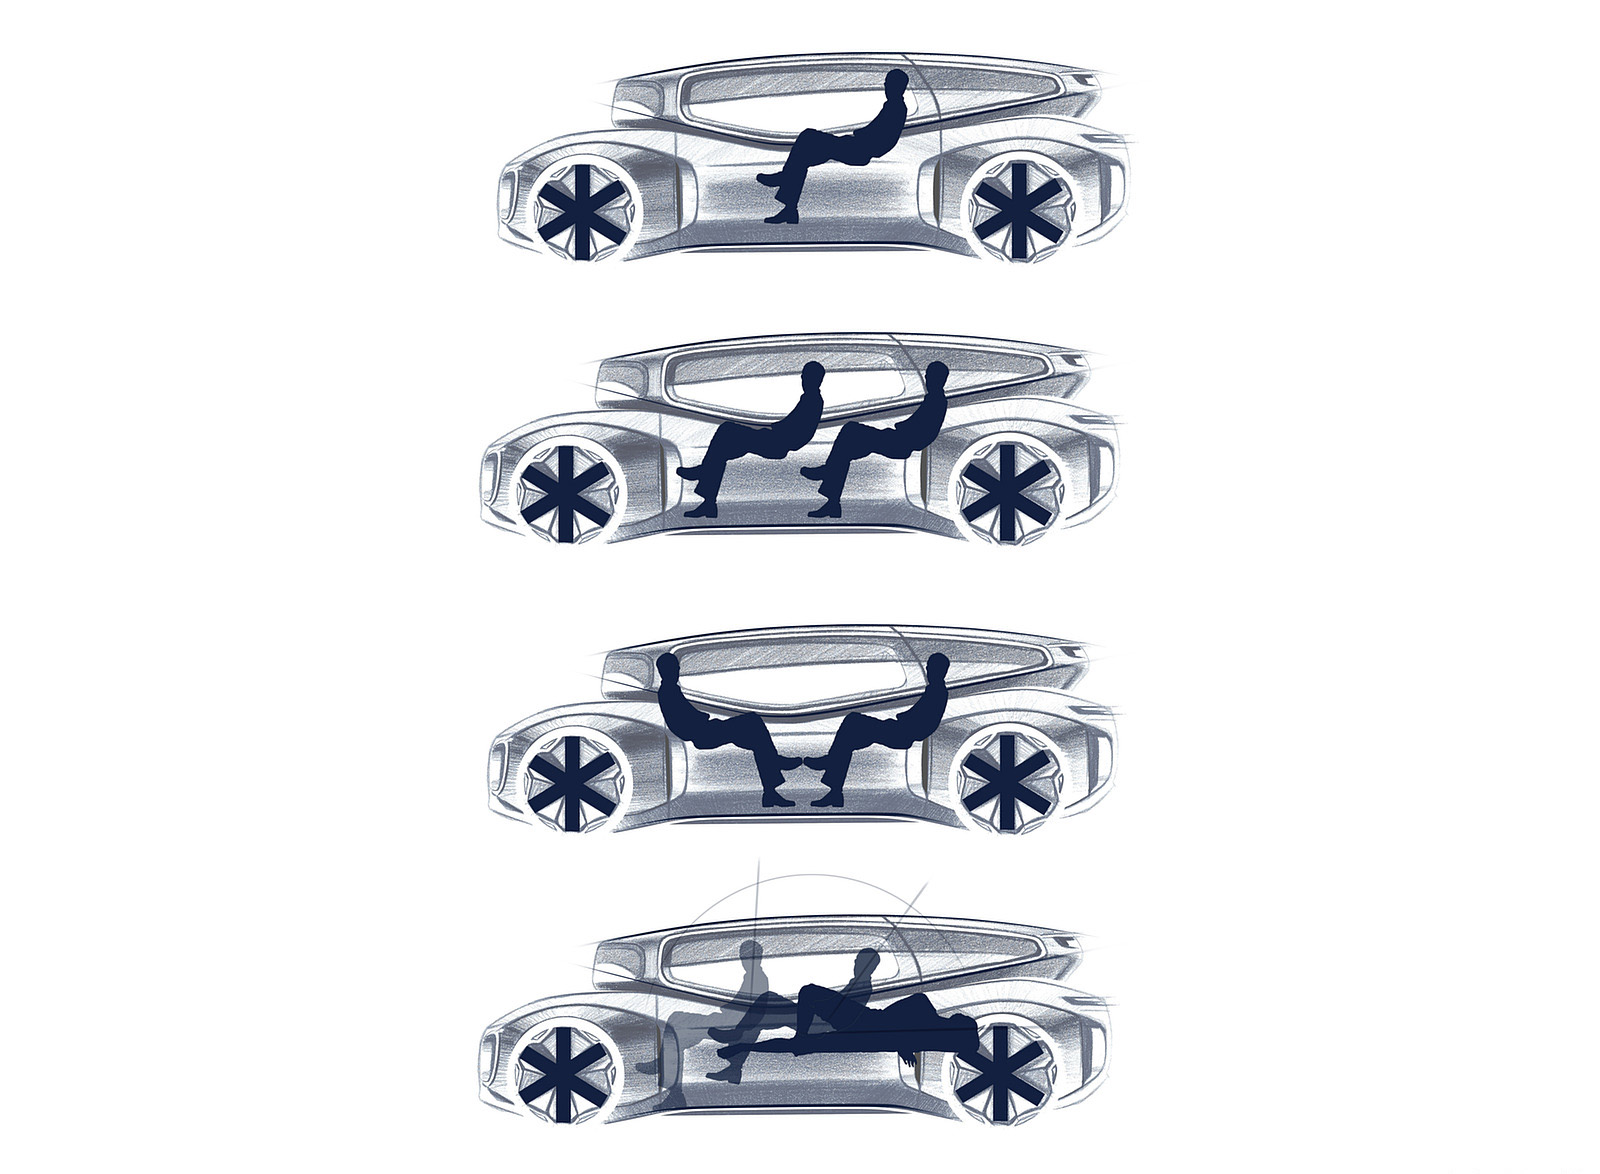 2022 Volkswagen GEN.TRAVEL Concept Interior Wallpapers #16 of 16